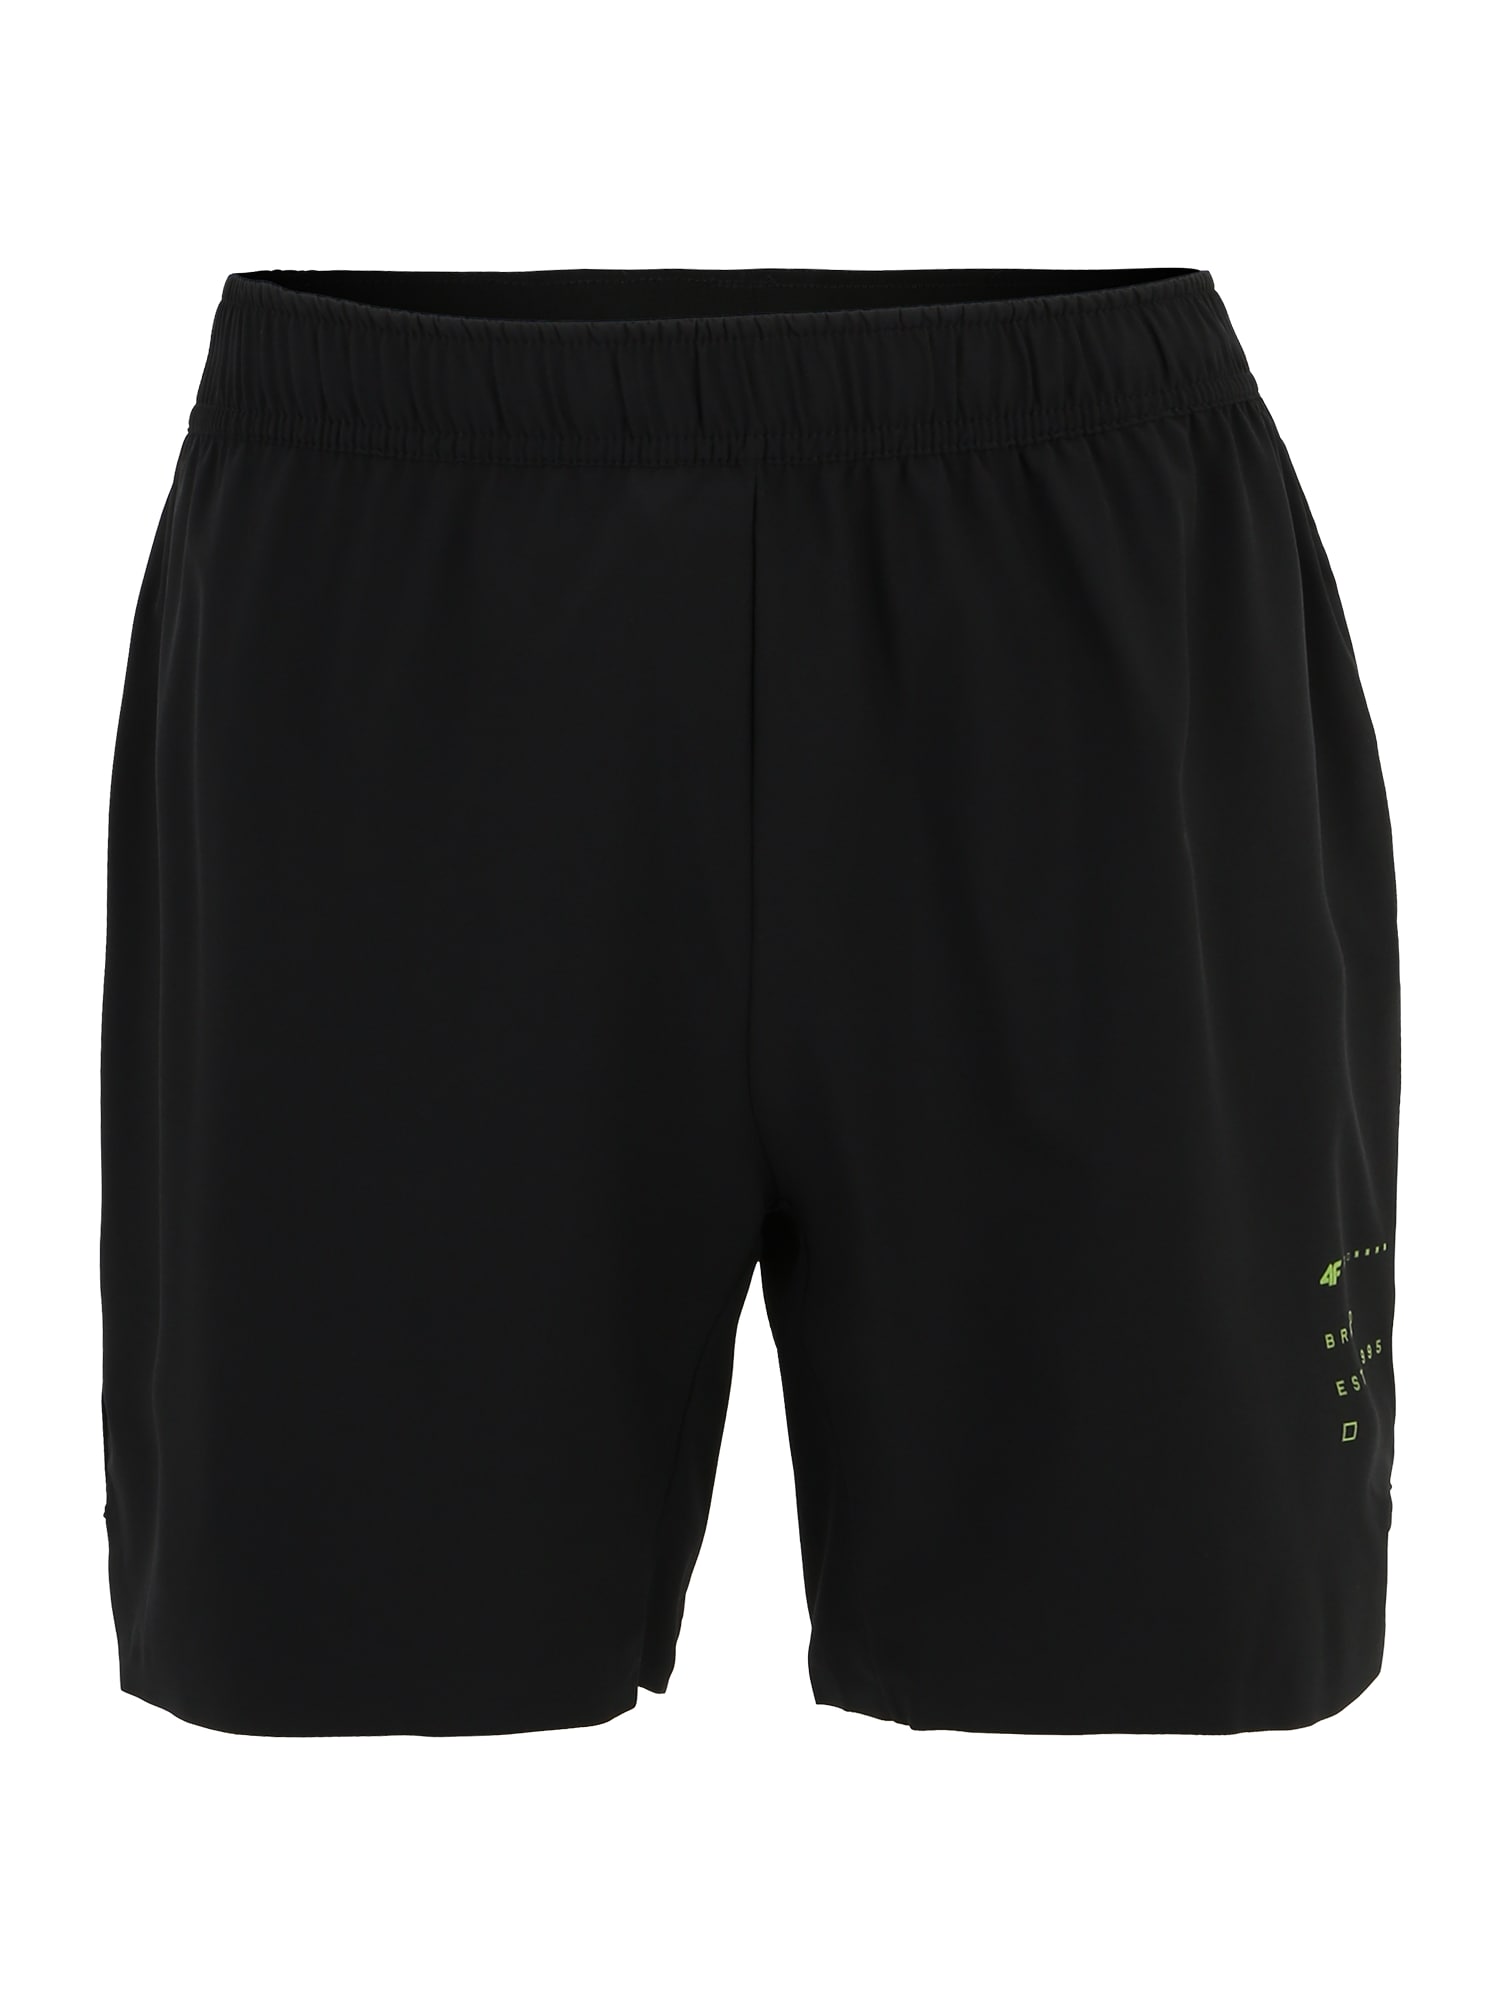 4F Športne hlače  svetlo zelena / črna